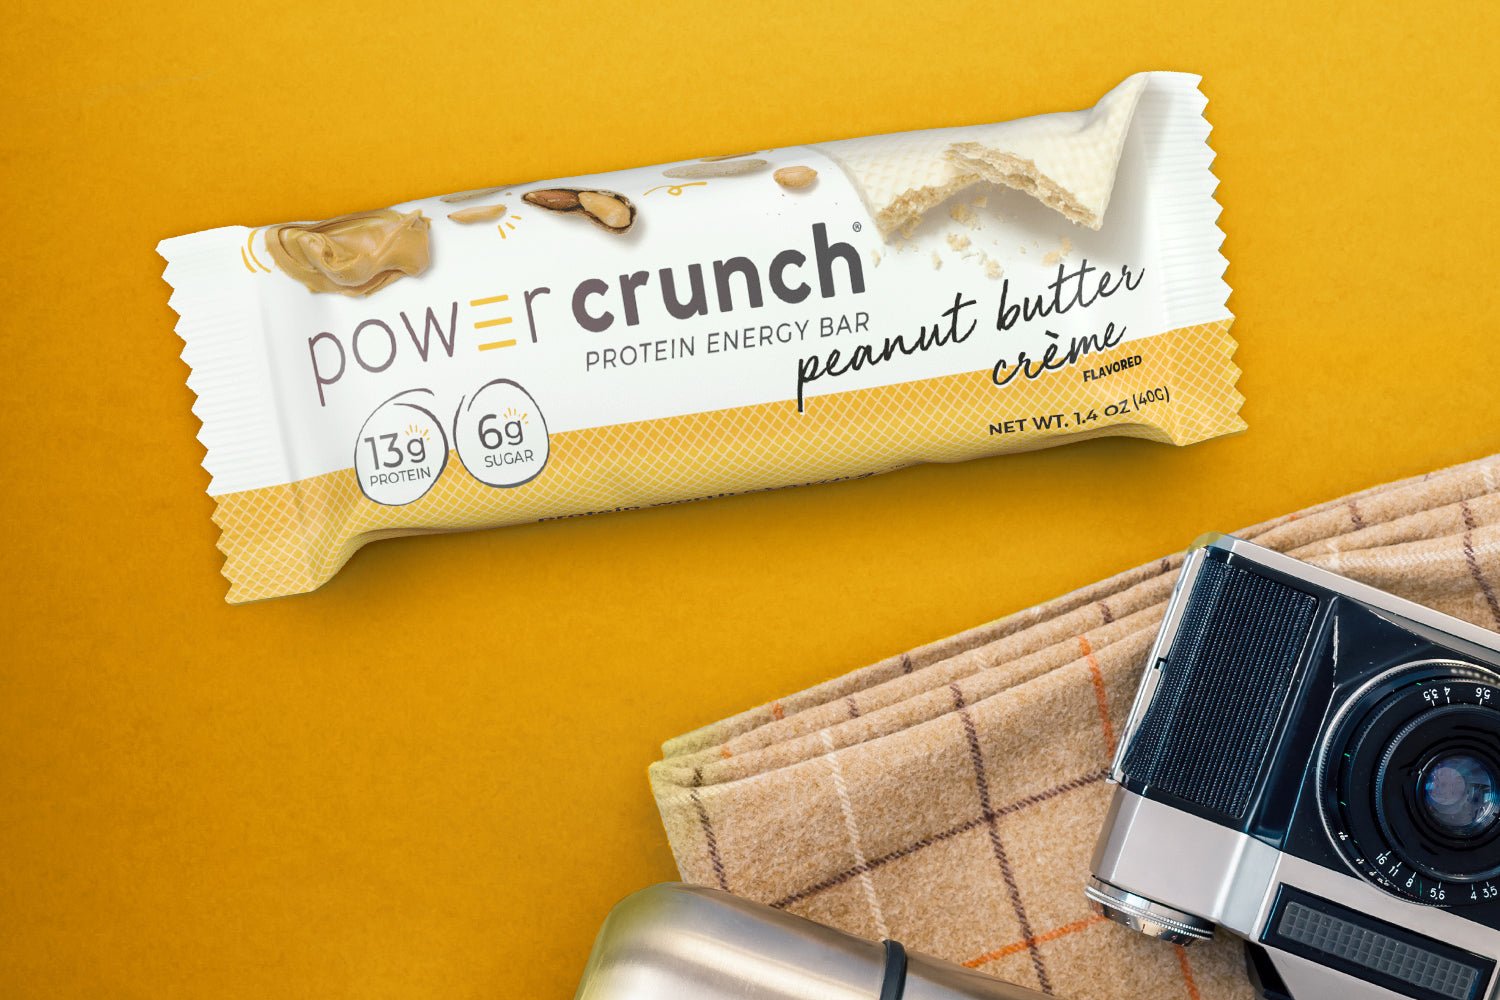 Peanut Butter Crème - Power CrunchPower Crunch Original